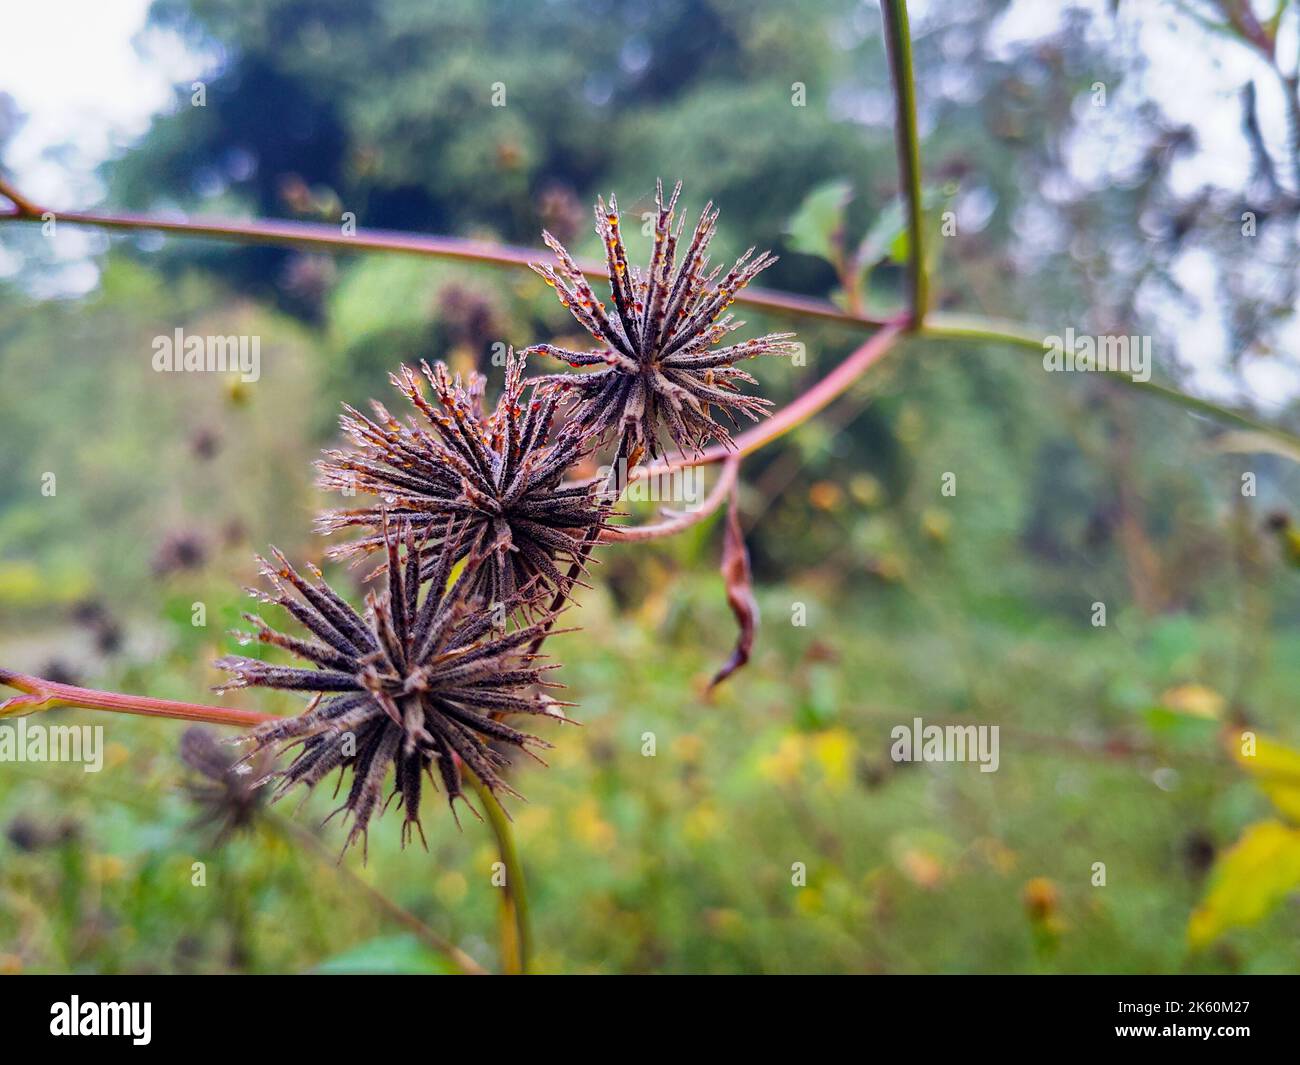 Bidens pilosa (mendiant-tiques poilues) boutons de fleurs sauvages dans les jungles d'Uttarakhand Inde. Banque D'Images